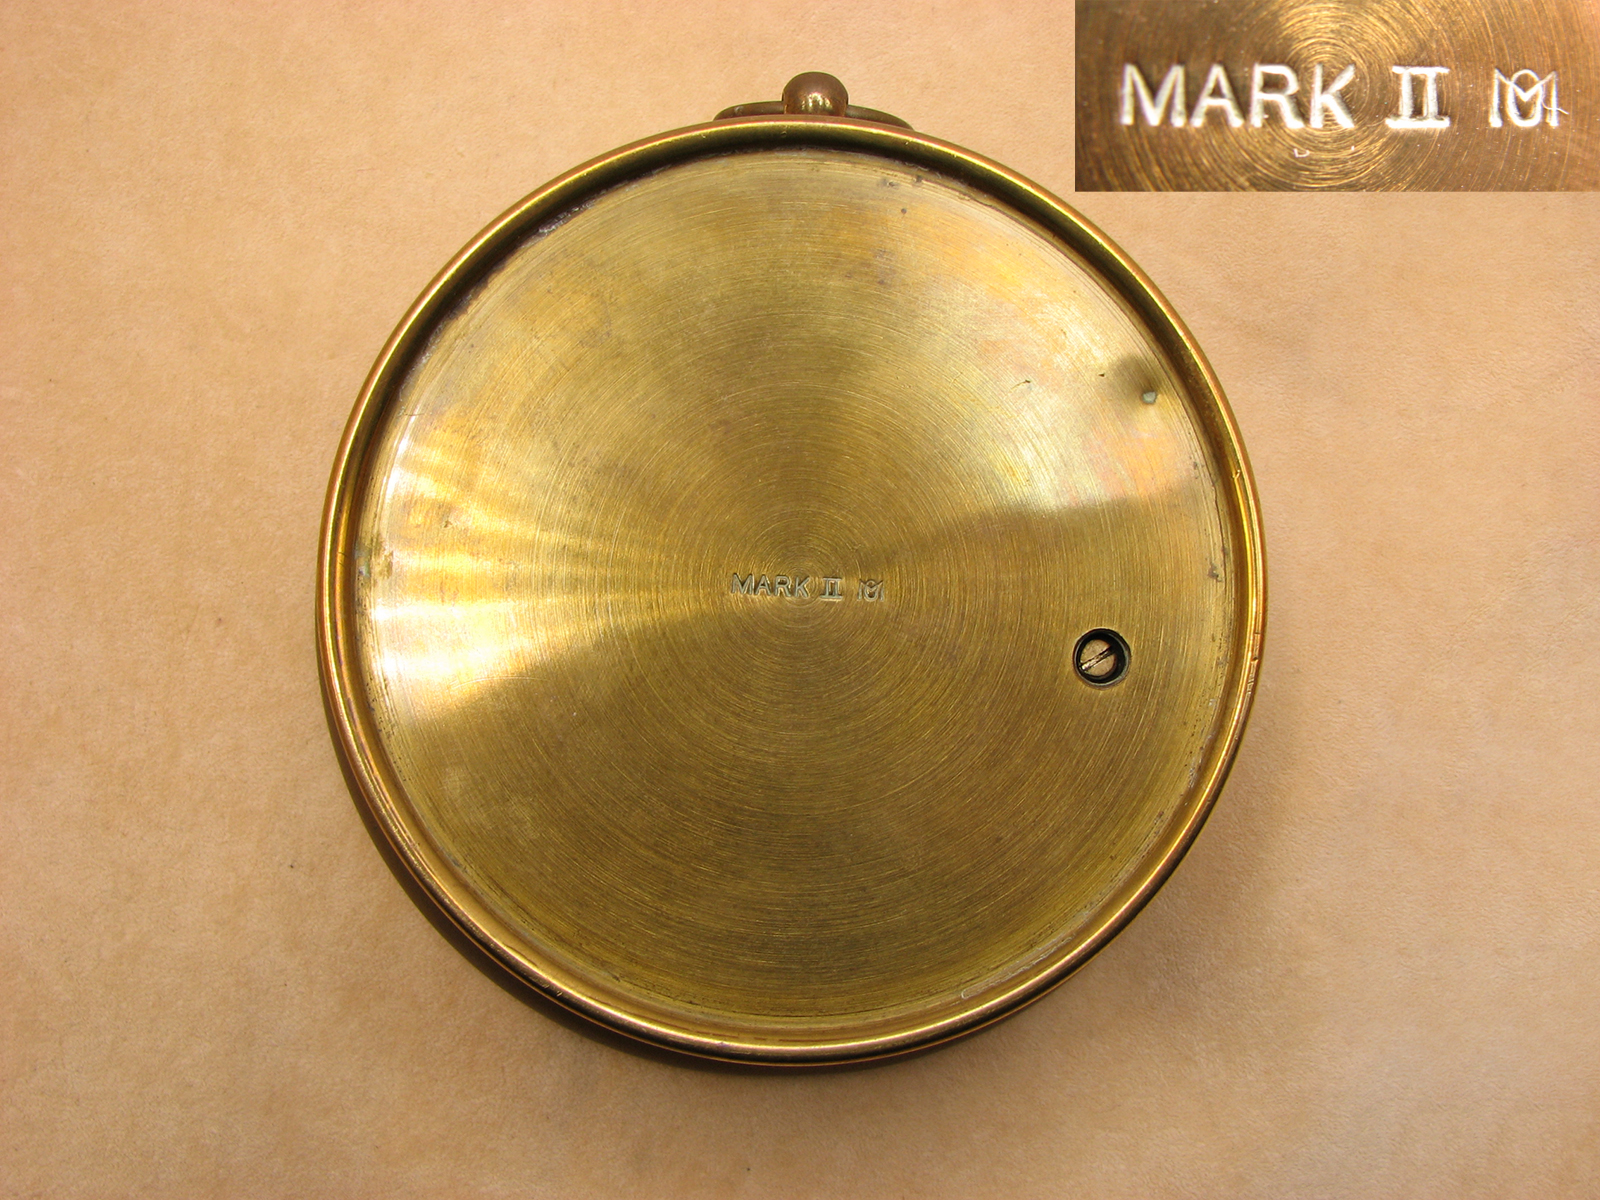 WW2 period Mark II Meteorological Office aneroid barometer by T.A REYNOLDS, SON & WARDALE LTD.